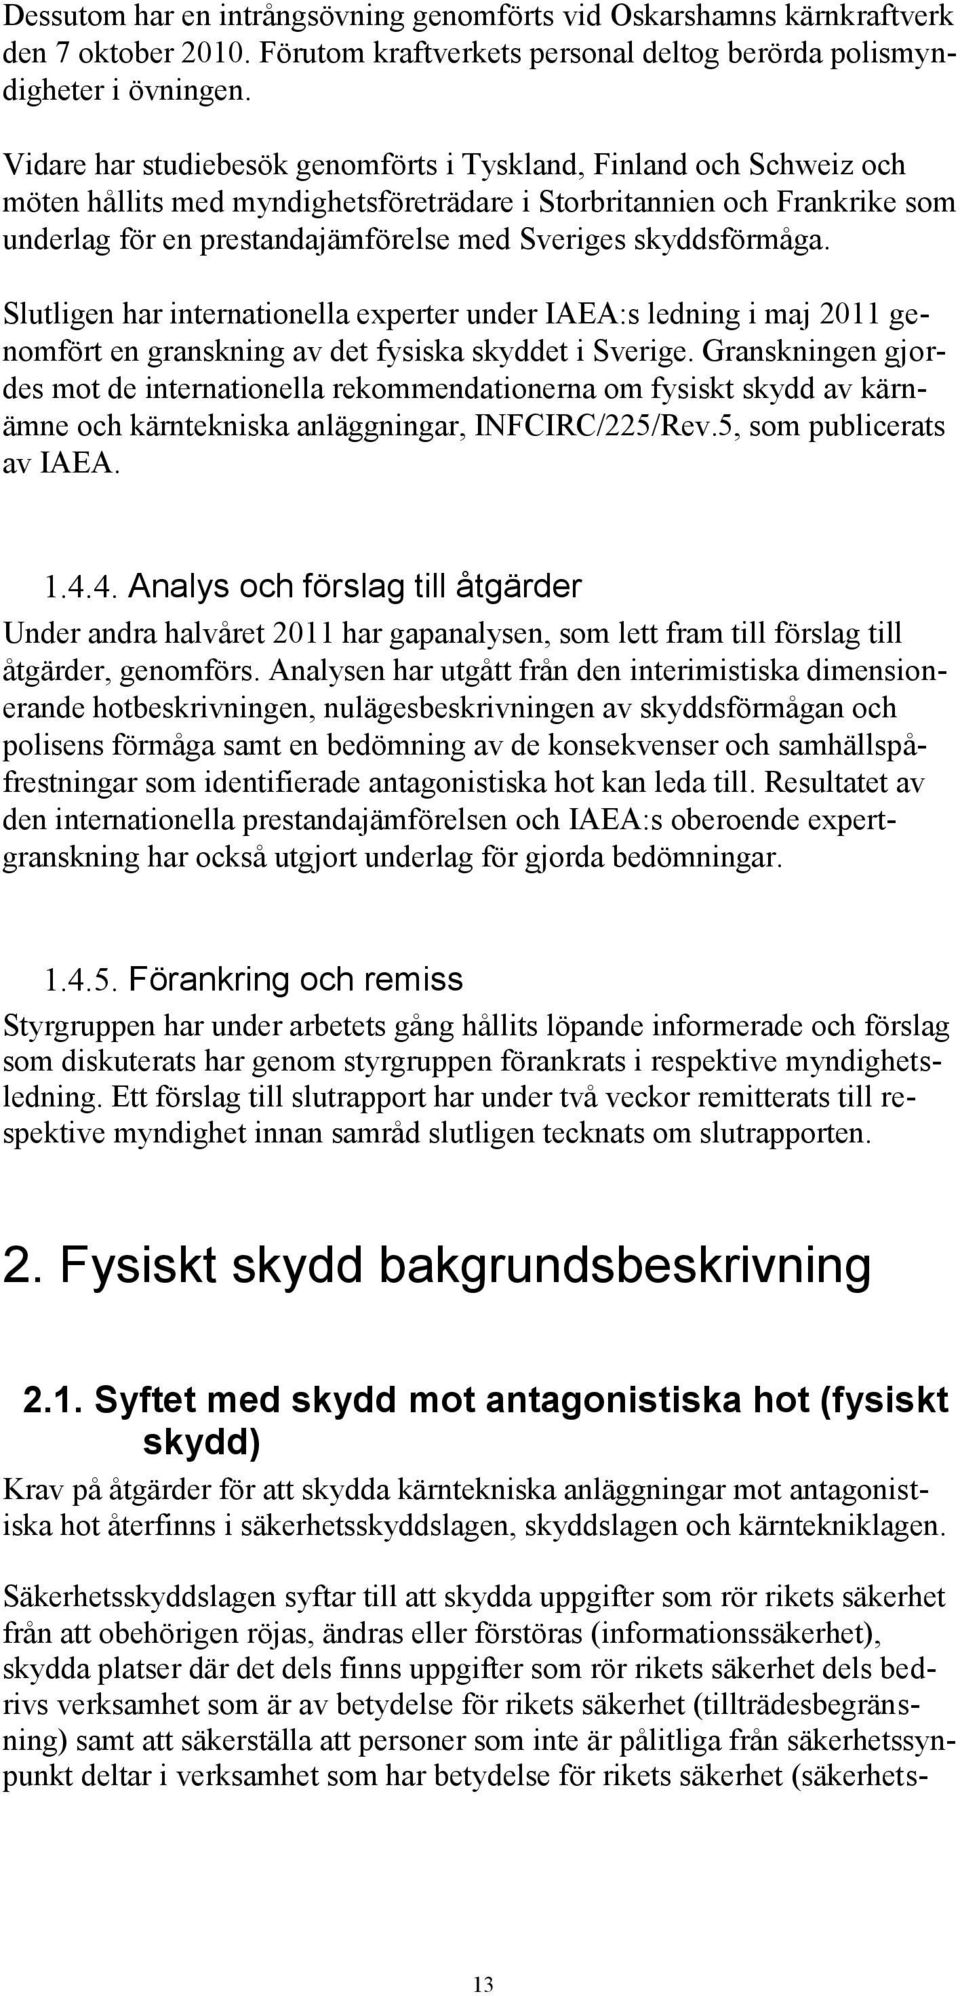 skyddsförmåga. Slutligen har internationella experter under IAEA:s ledning i maj 2011 genomfört en granskning av det fysiska skyddet i Sverige.